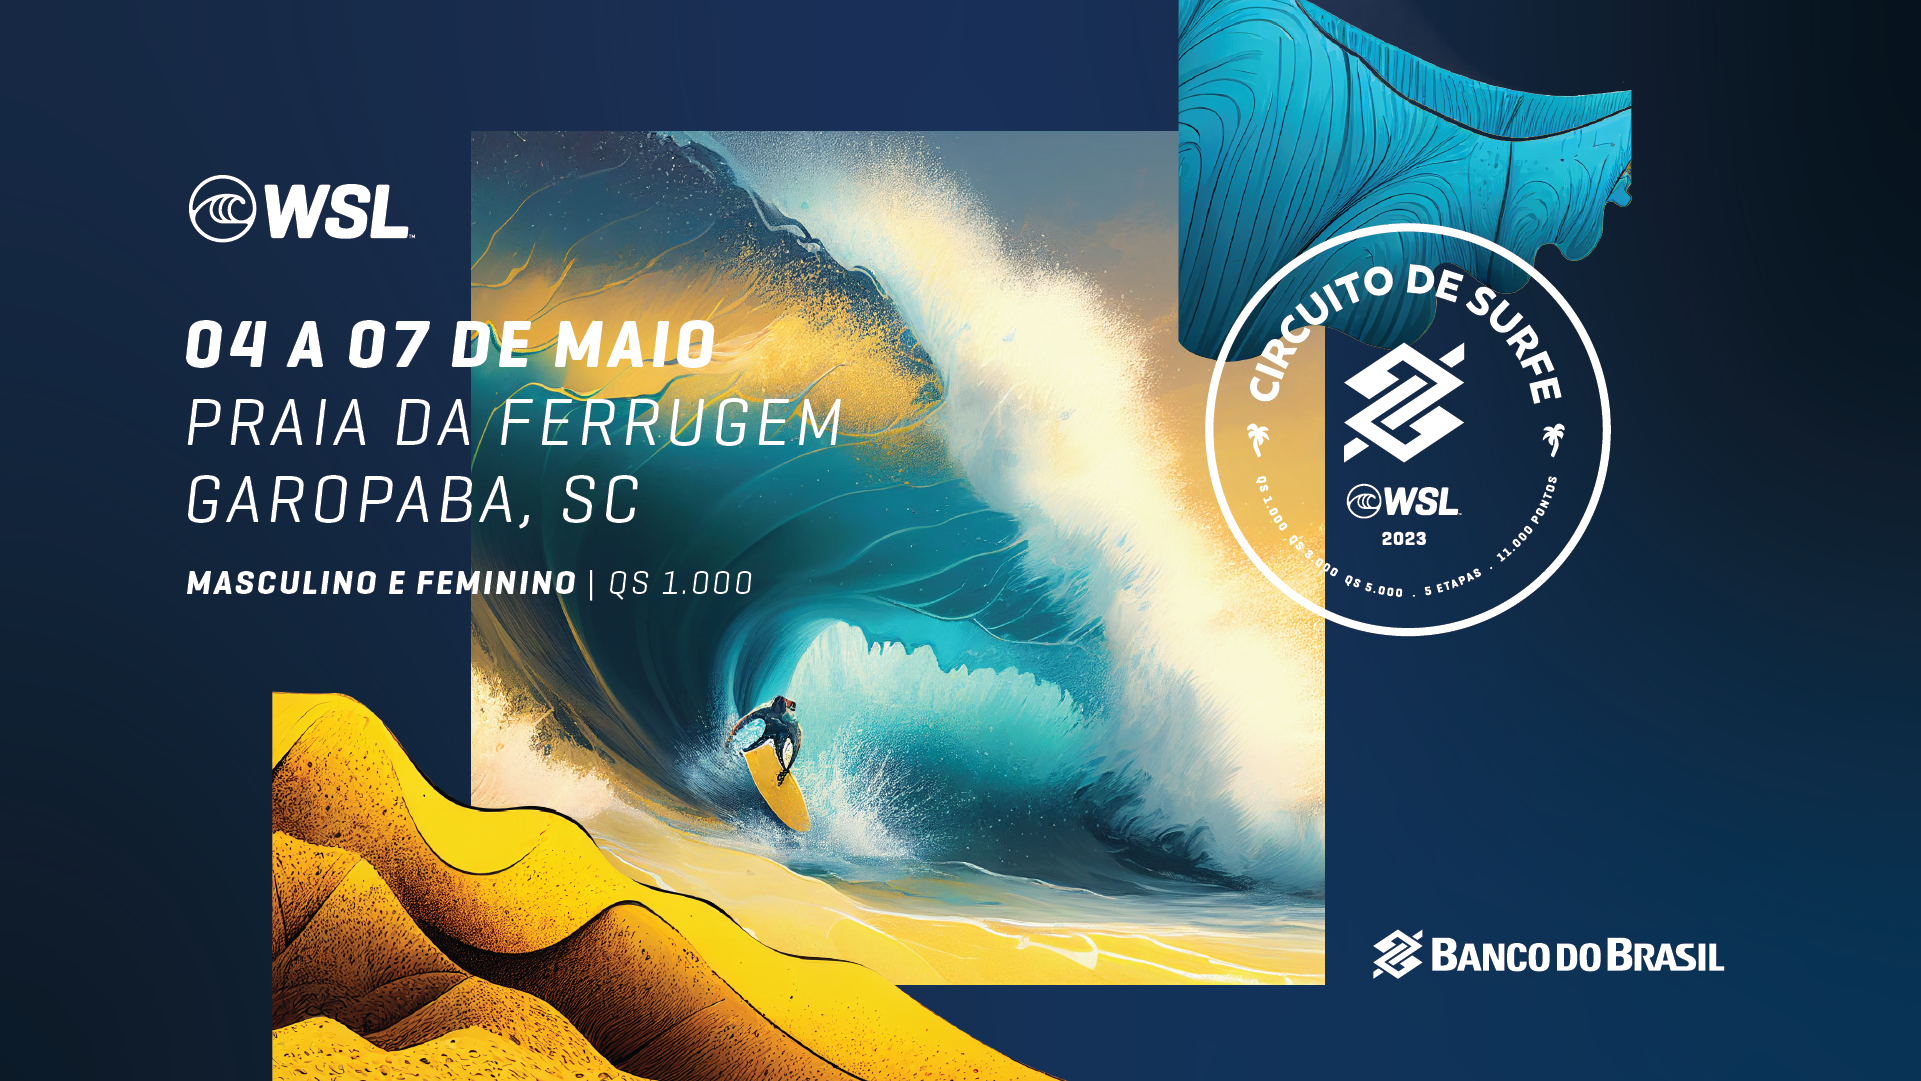 WSL inova e apresenta comunicação visual produzida com Inteligência Artificial em Garopaba (SC), segunda etapa do Circuito Banco do Brasil de Surfe 2023